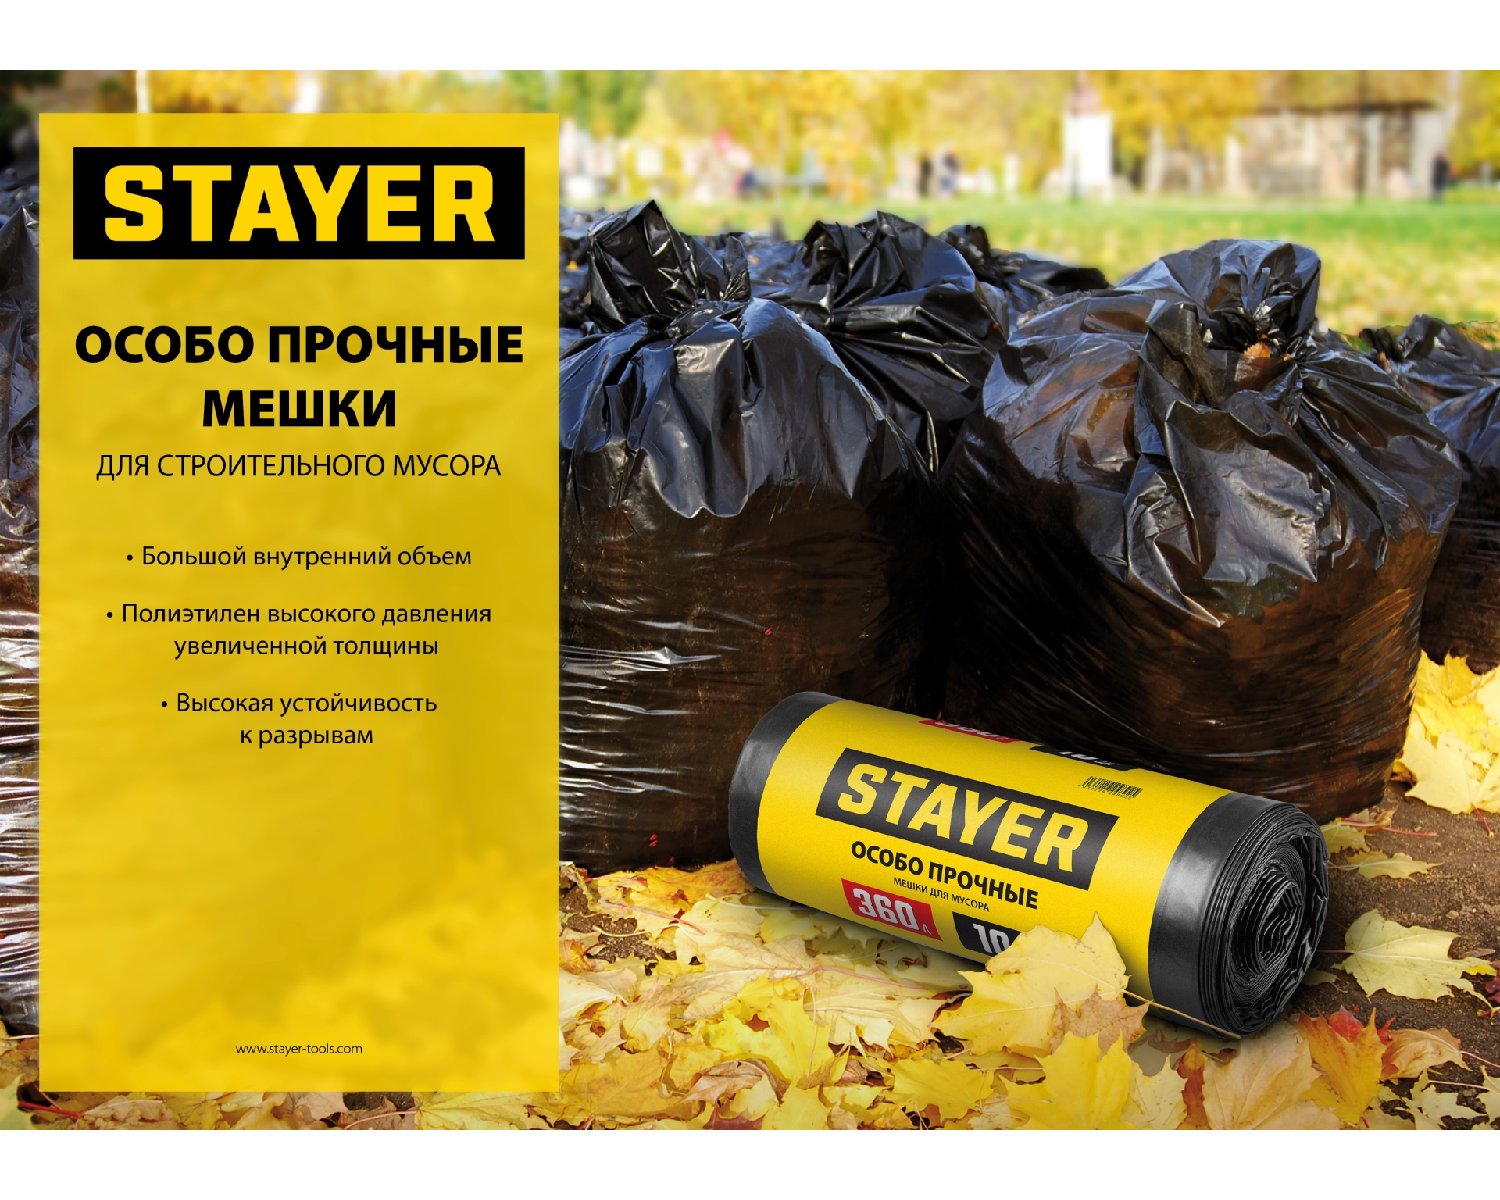 Строительные мусорные мешки Stayer 120л, 10шт, особопрочные, черные, HEAVY DUTY, (39157-120)